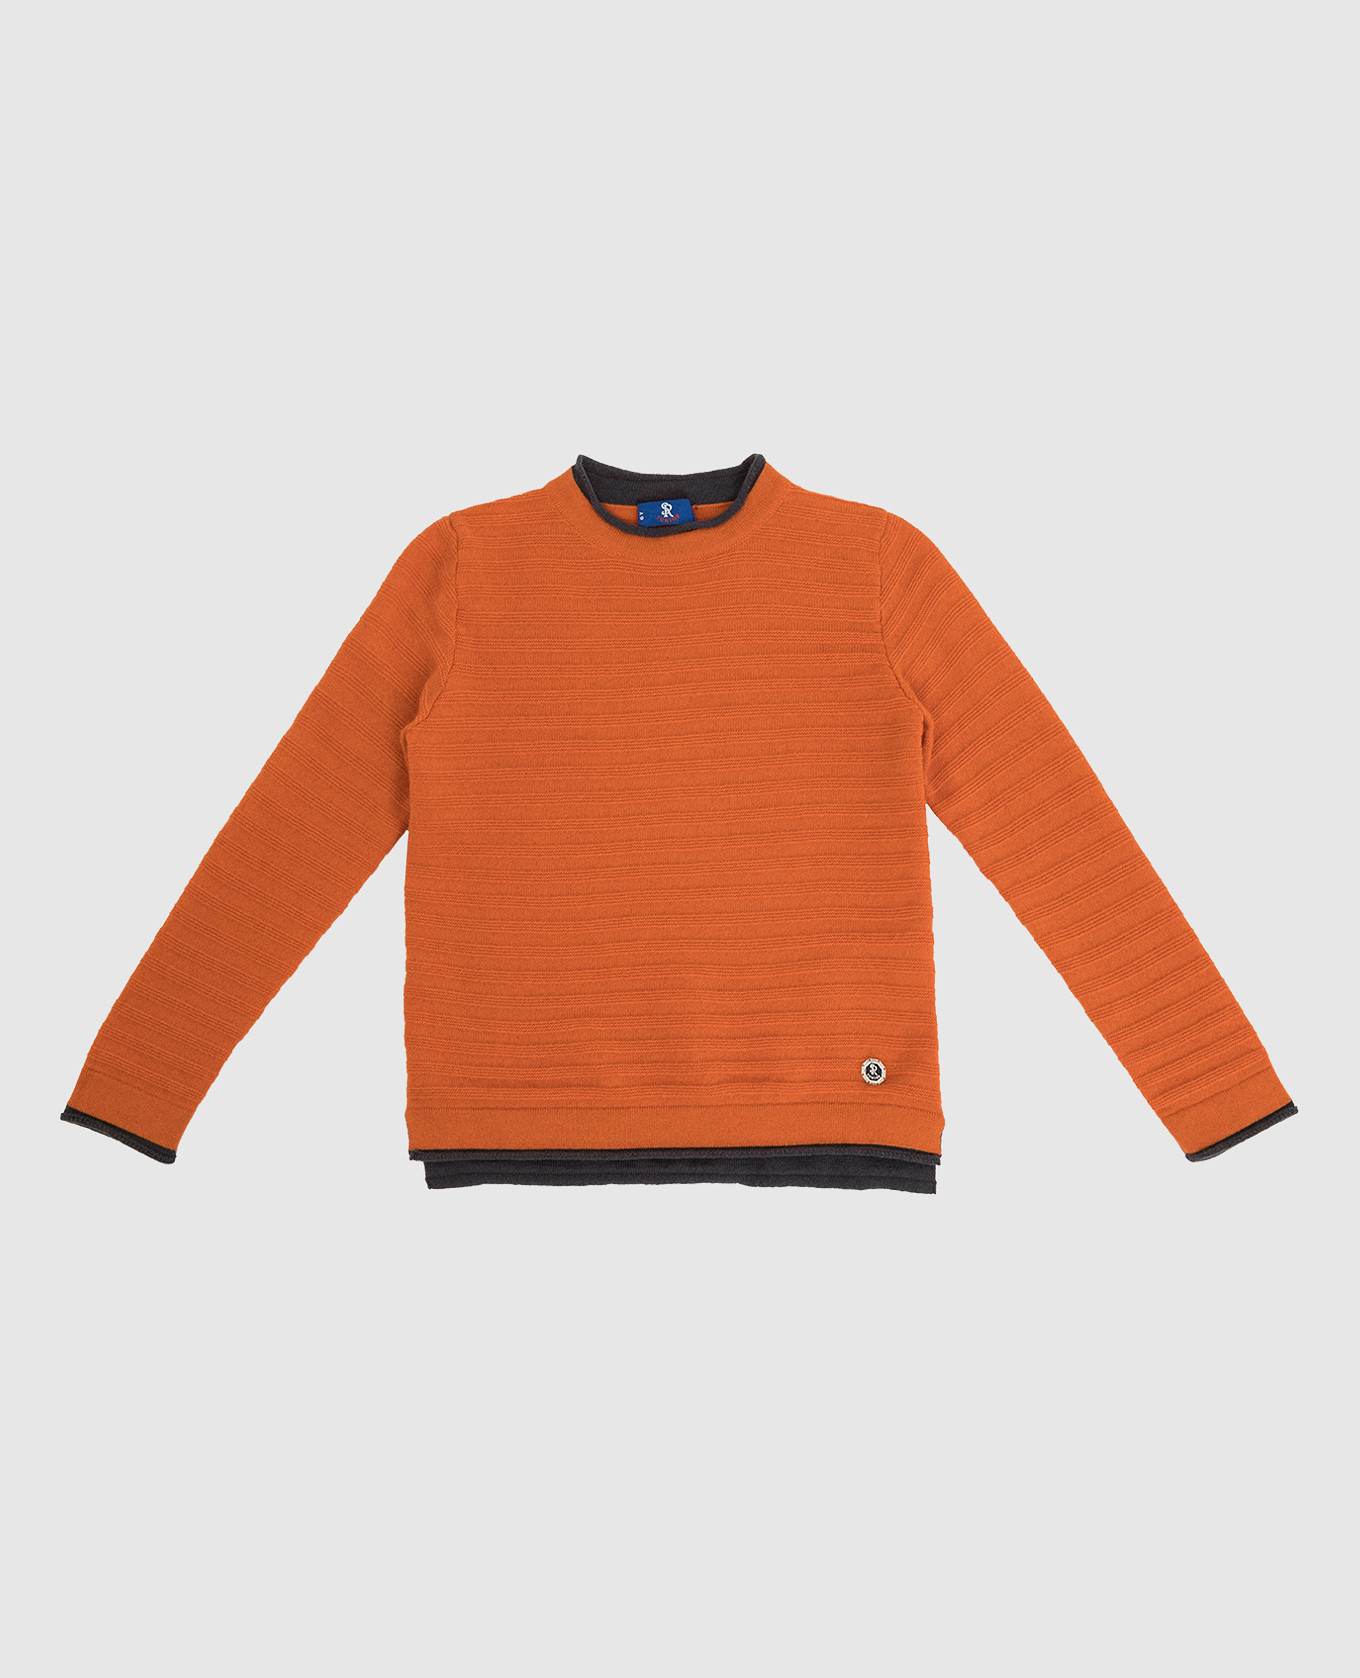 Children's orange cashmere jumper